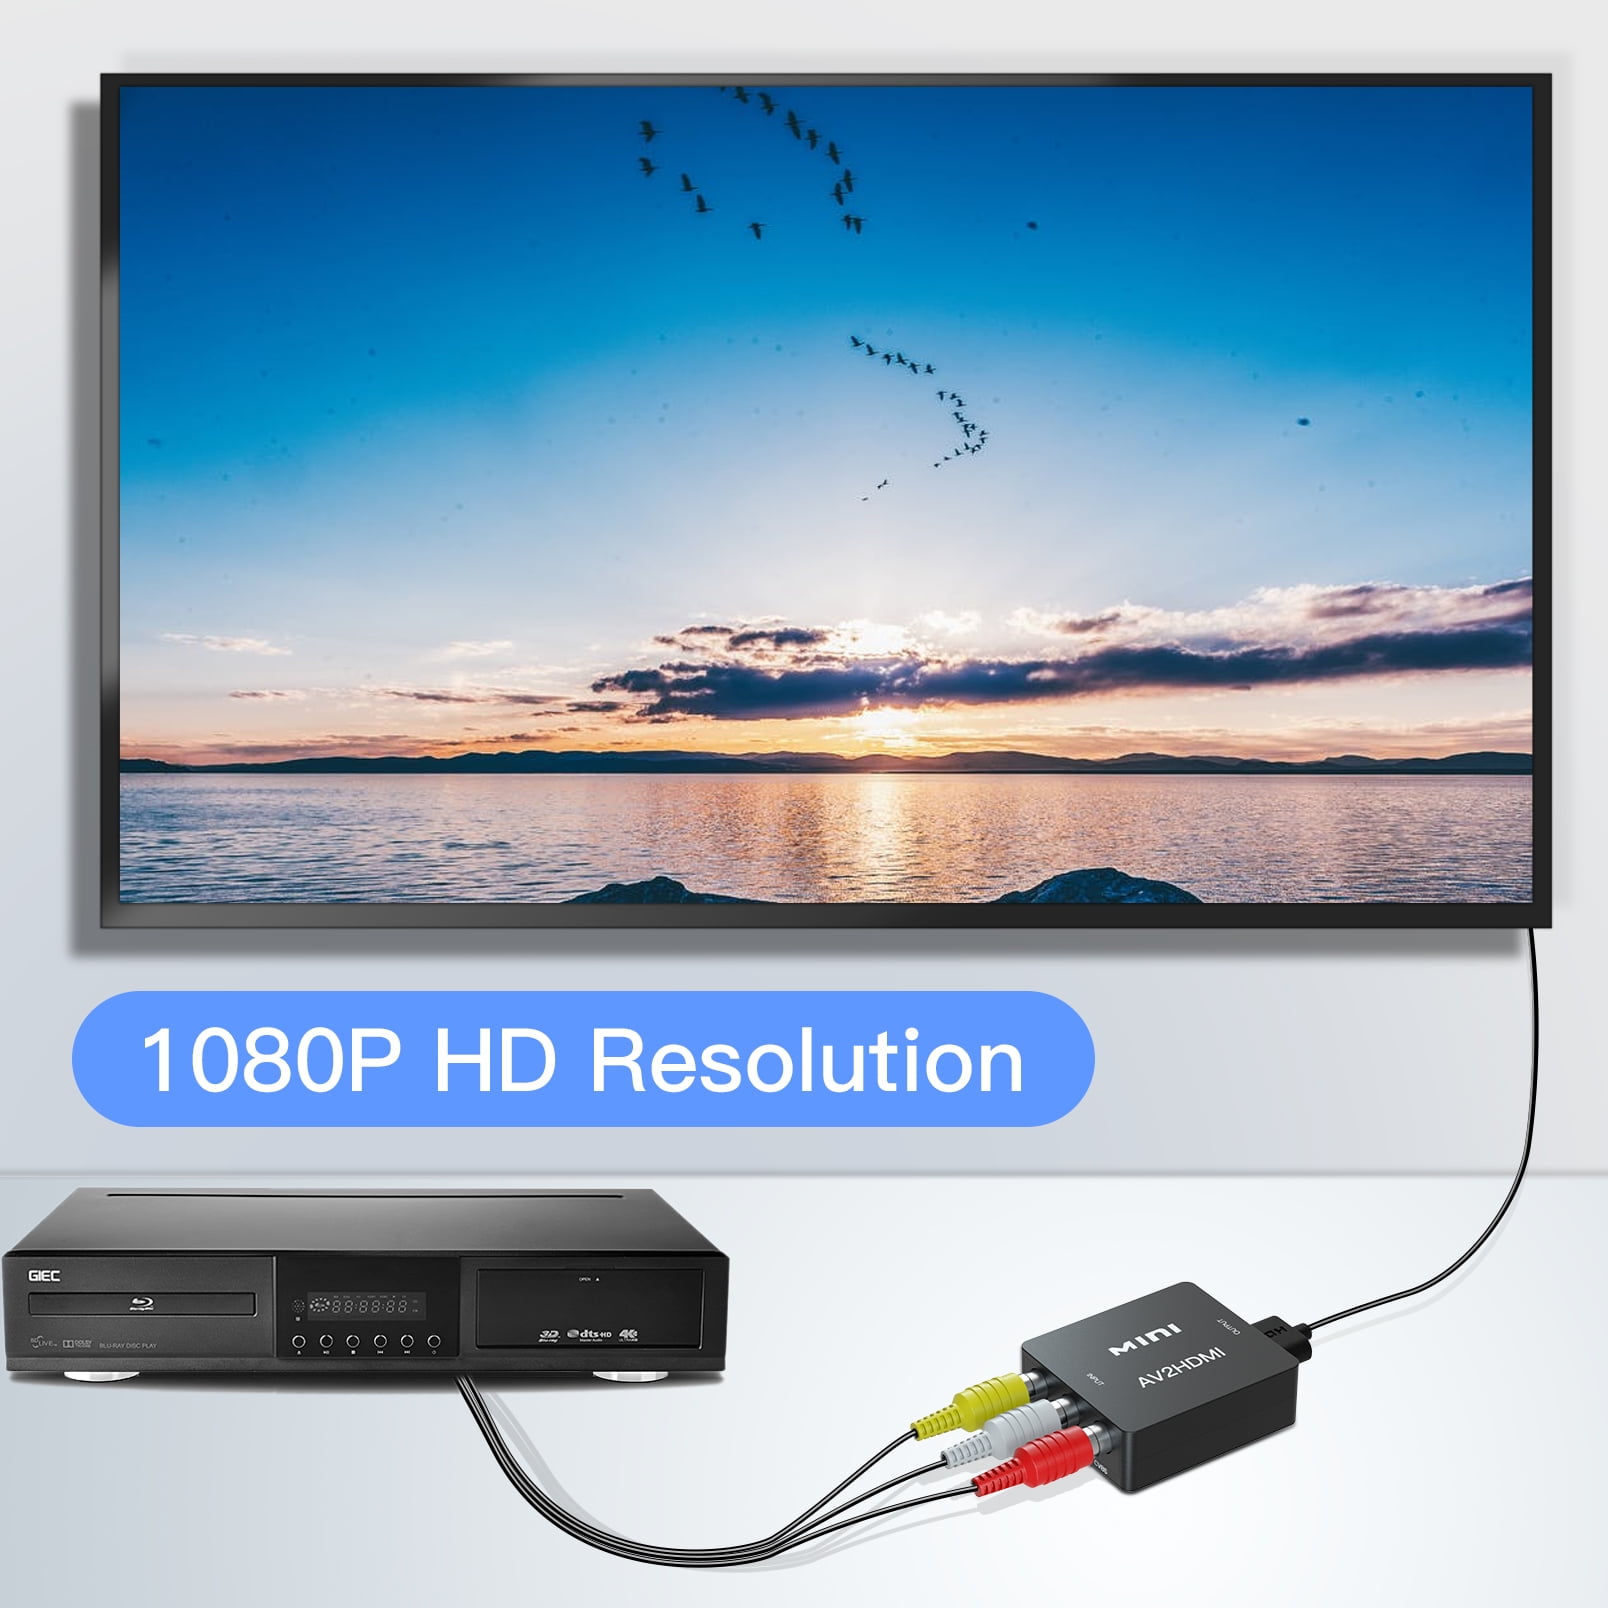  Convertidor RCA a HDMI, convertidor AV a HDMI con cables RCA,  adaptador de video compuesto analógico de aluminio 1080P CVBS compatible  con PAL/NTSC para Smart TV PS2, Wii SNES N64, Xbox